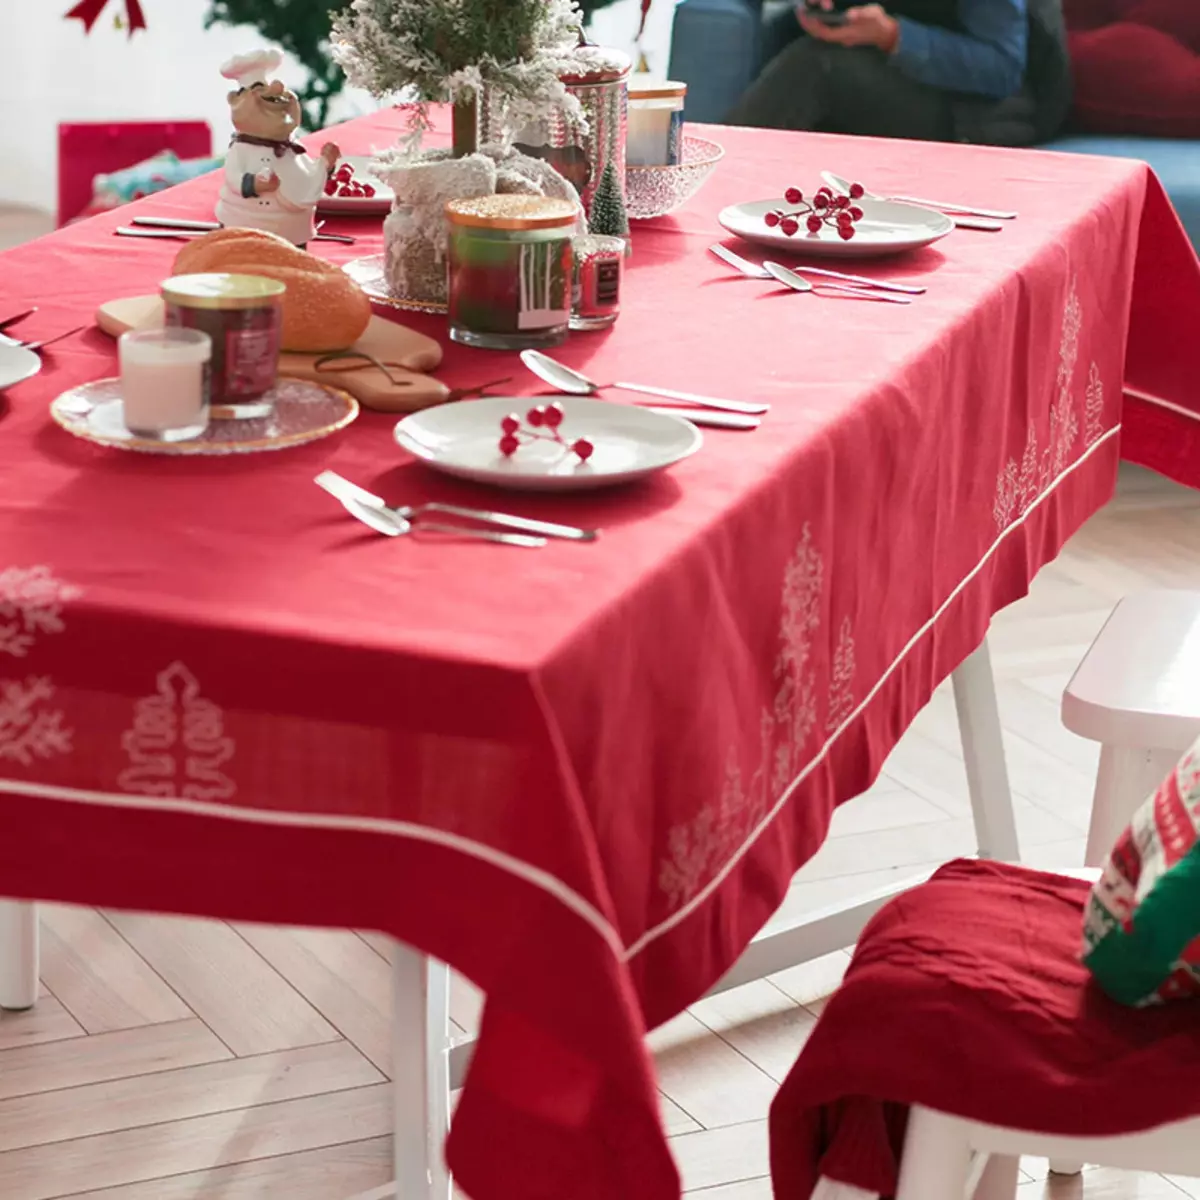 I-Red Tablecloths: etafuleni eliyindilinga 180 cm futhi unxande, emakhelwaneni nasemathebeni le-monochrome. Izindlela zokusebenza. Ilineni indwangu yetafula eneziqhwa zeqhwa nezinye izinketho 21598_20